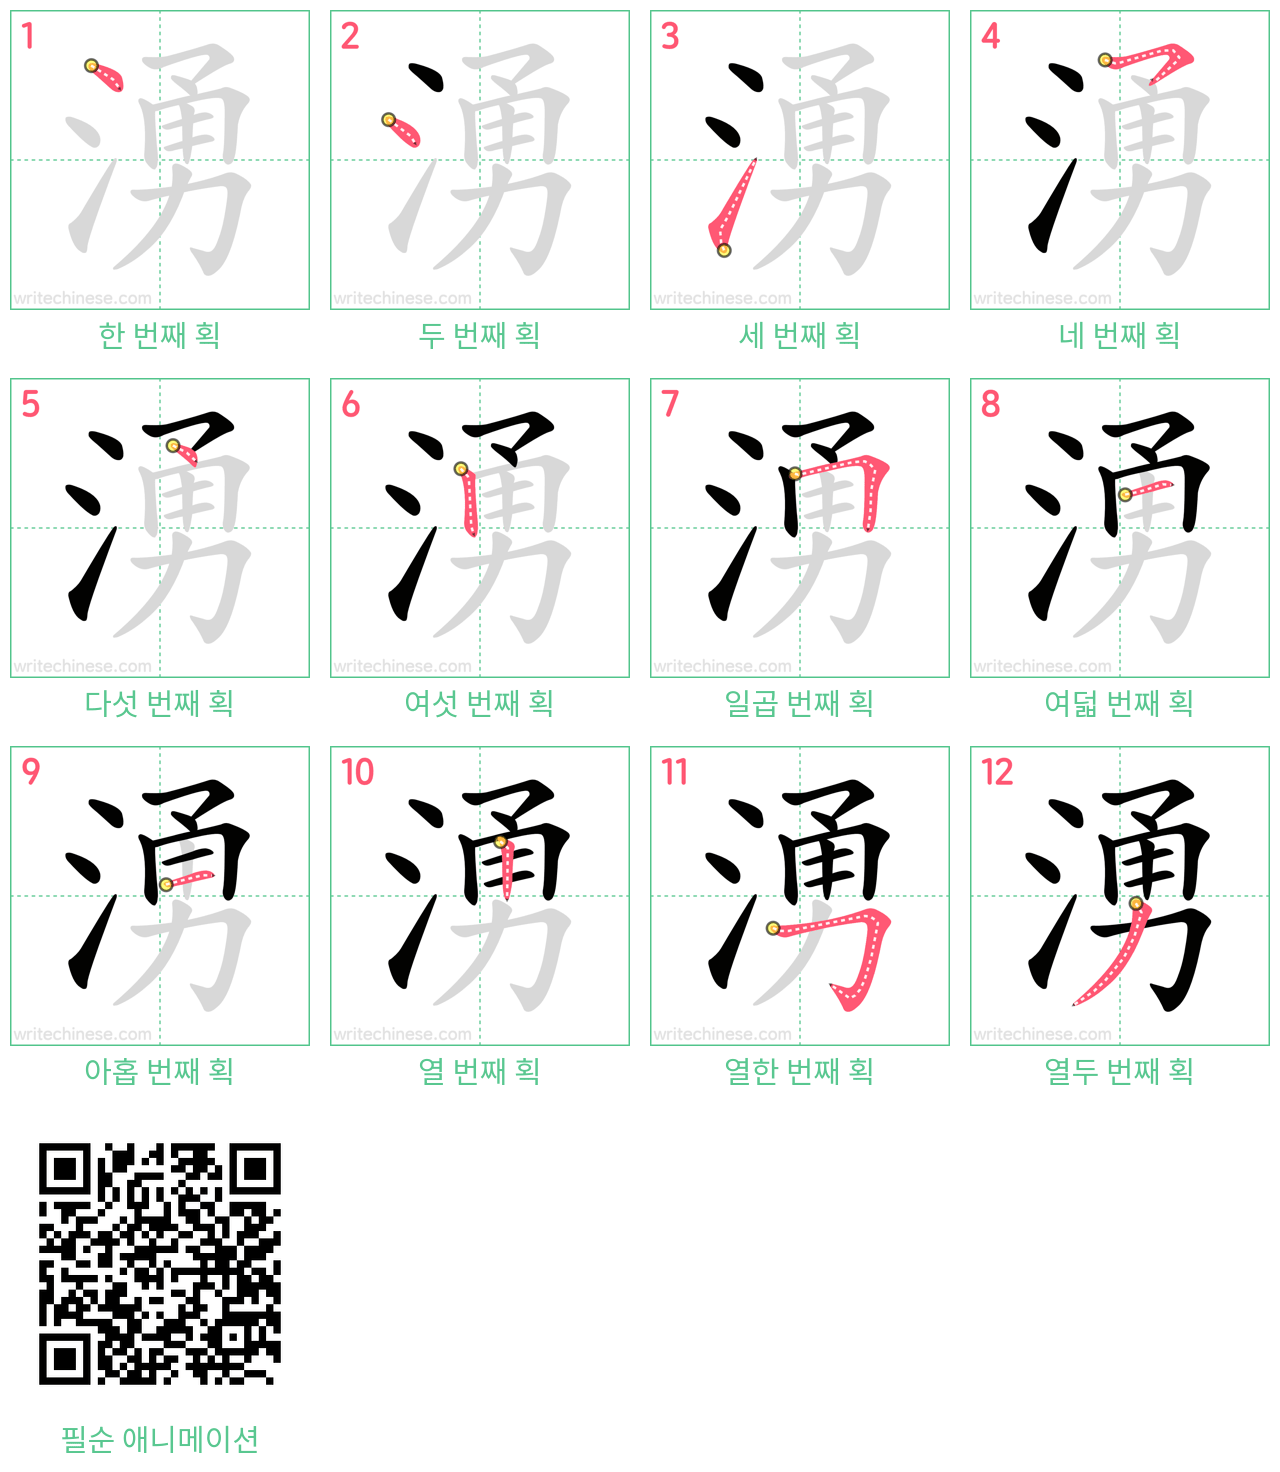 湧 step-by-step stroke order diagrams